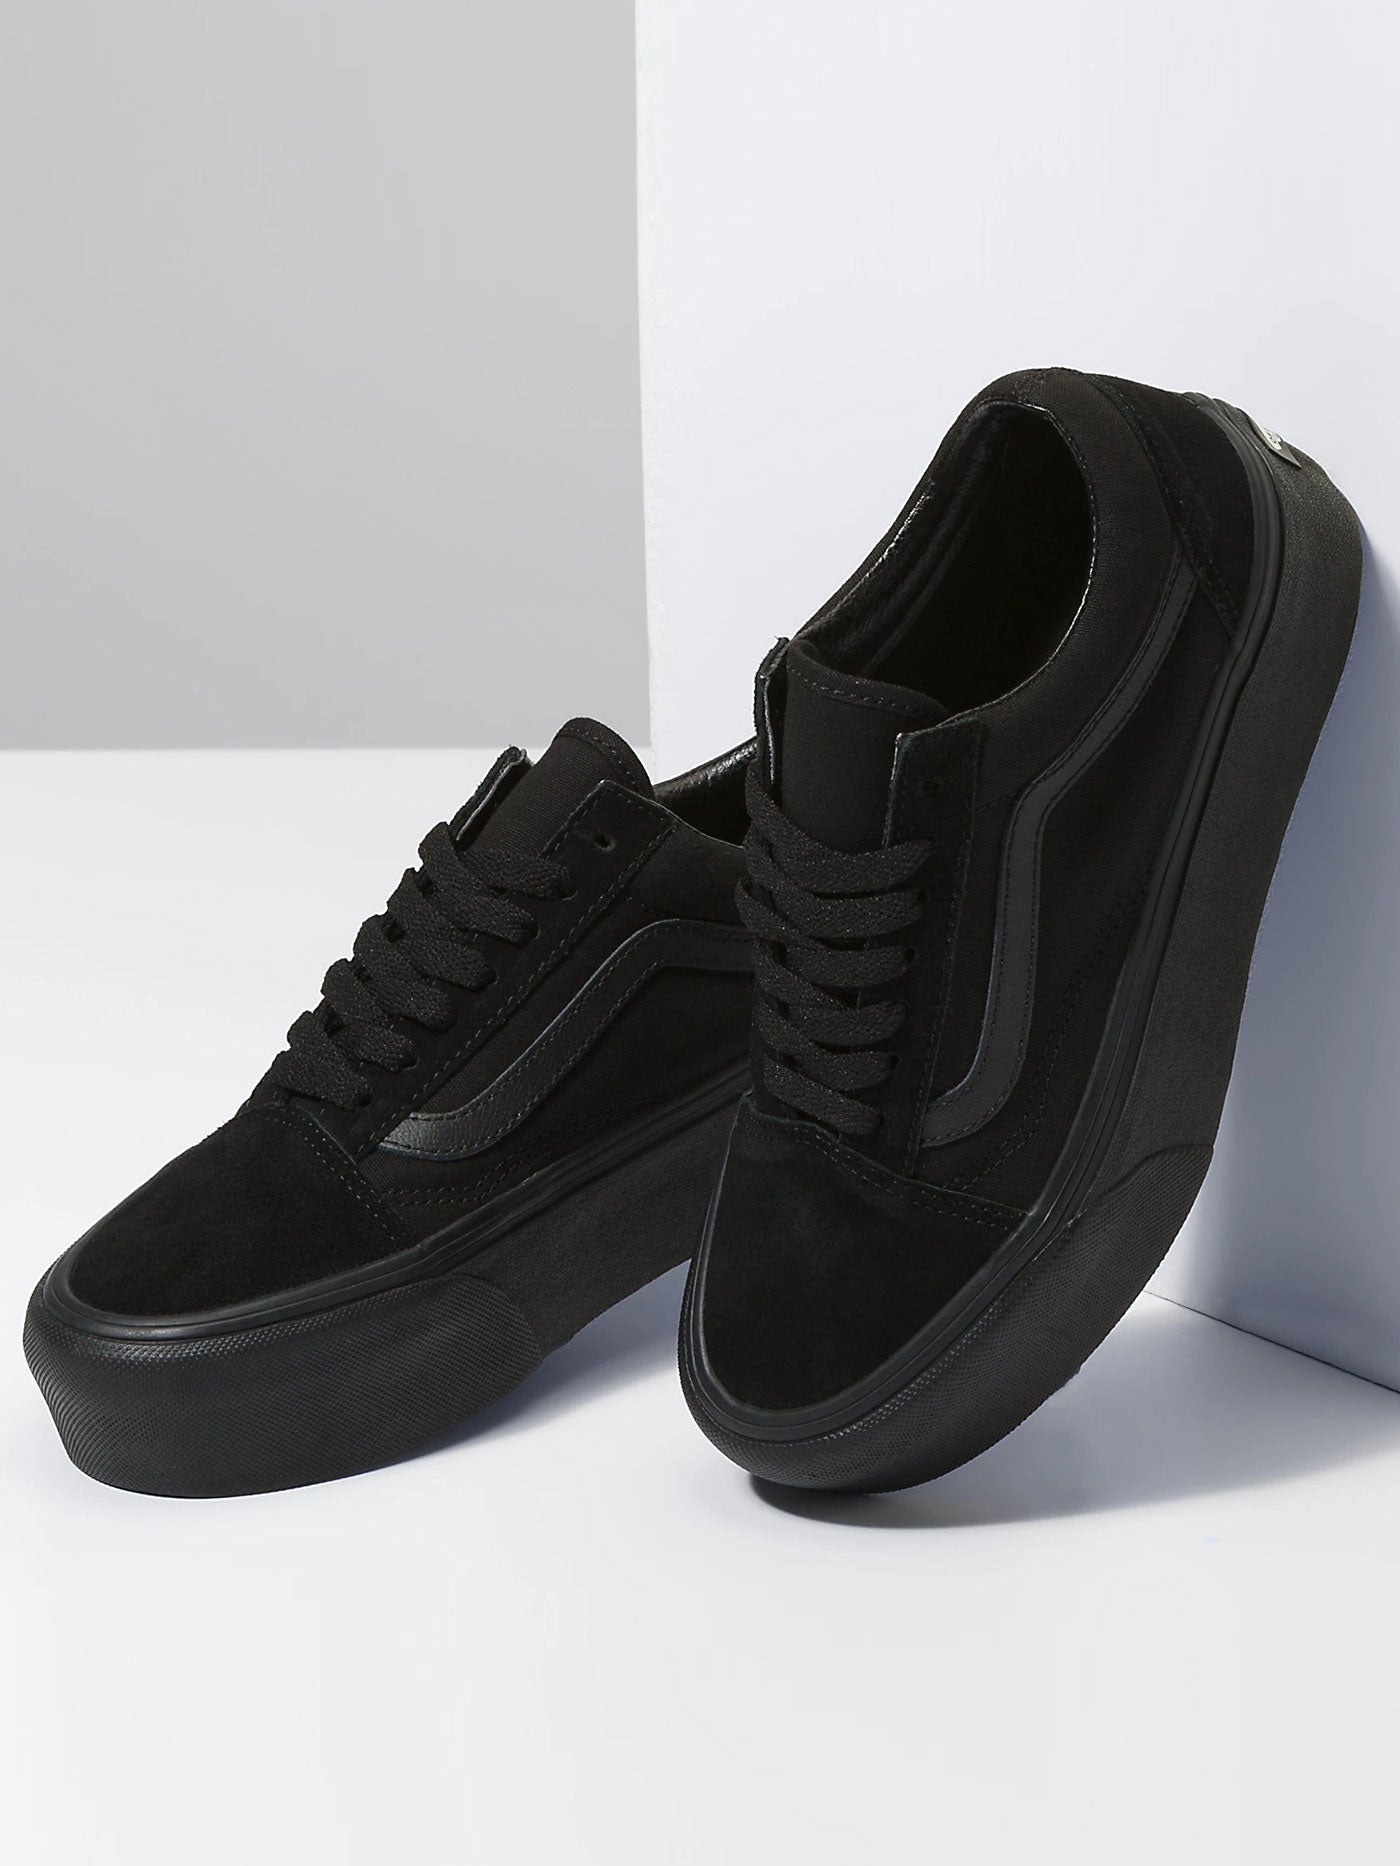 Vans Old Skool Stackform Women Black/Black Shoes